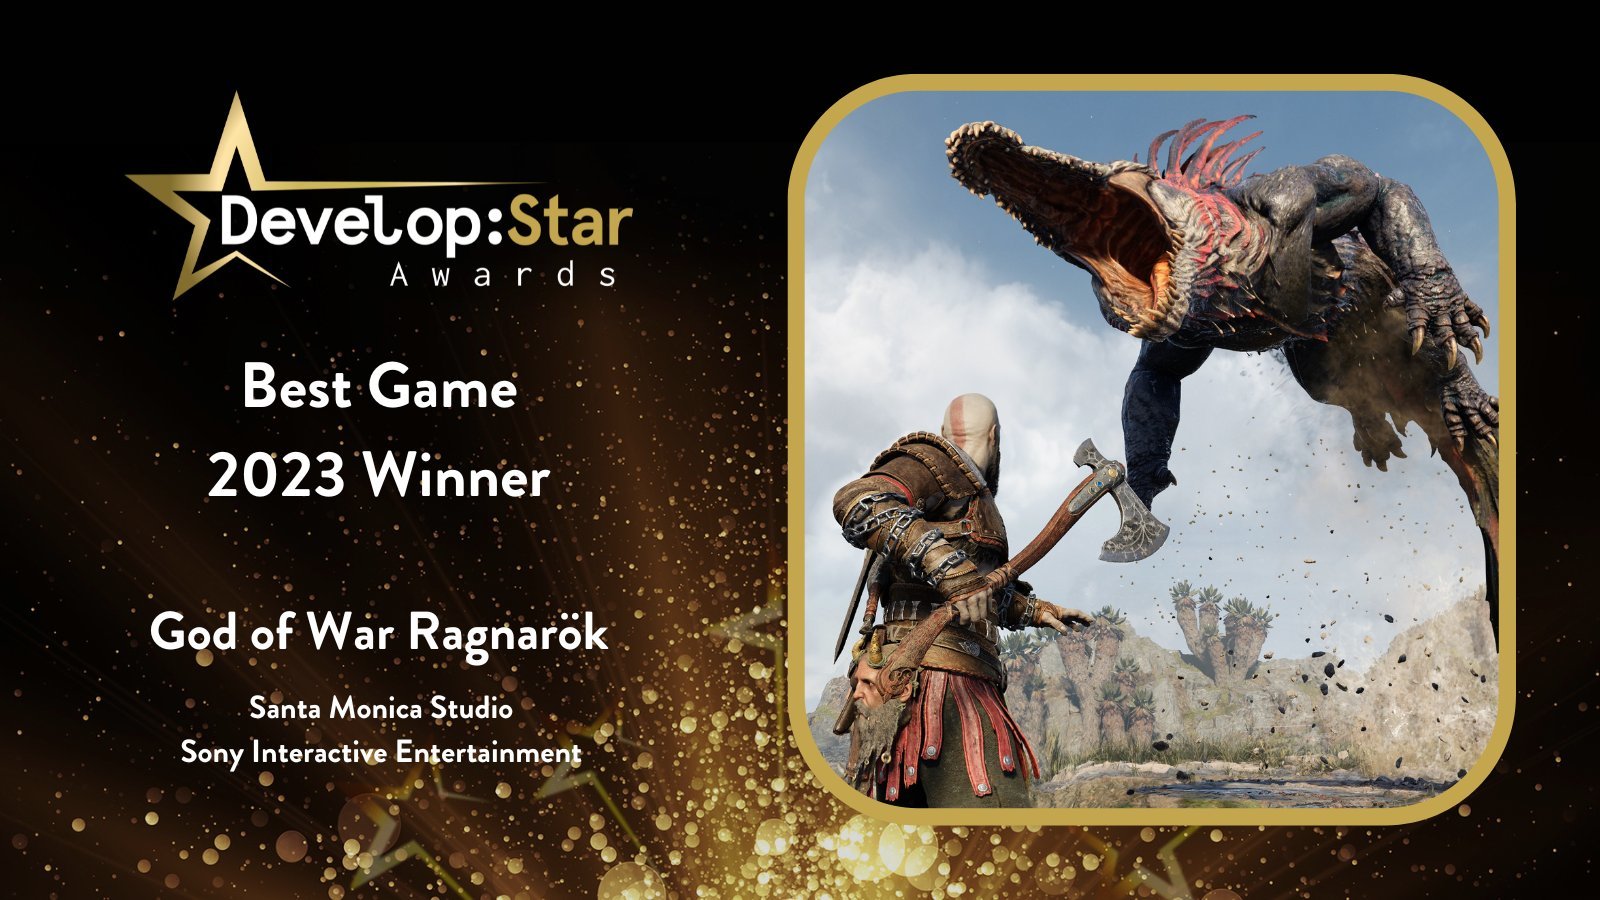 《战神5》赢得开发之星“最佳游戏”大奖-第1张